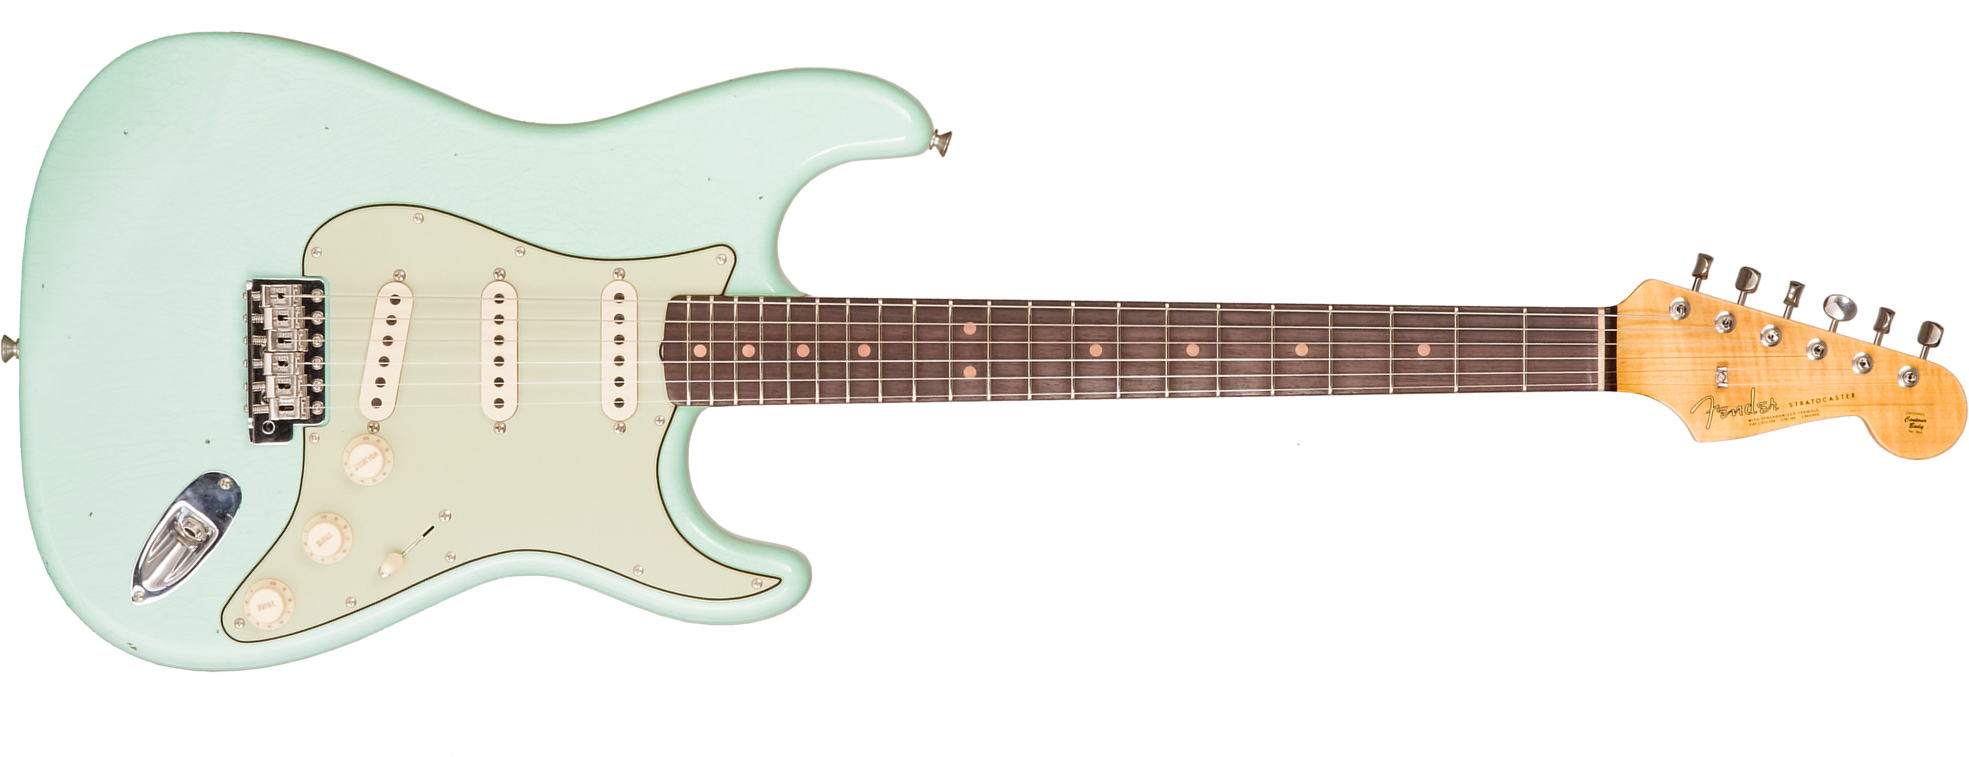 Fender Custom Shop Strat 1964 3s Trem Rw #cz579326 - Journey Man Relic Aged Surf Green - Elektrische gitaar in Str-vorm - Main picture